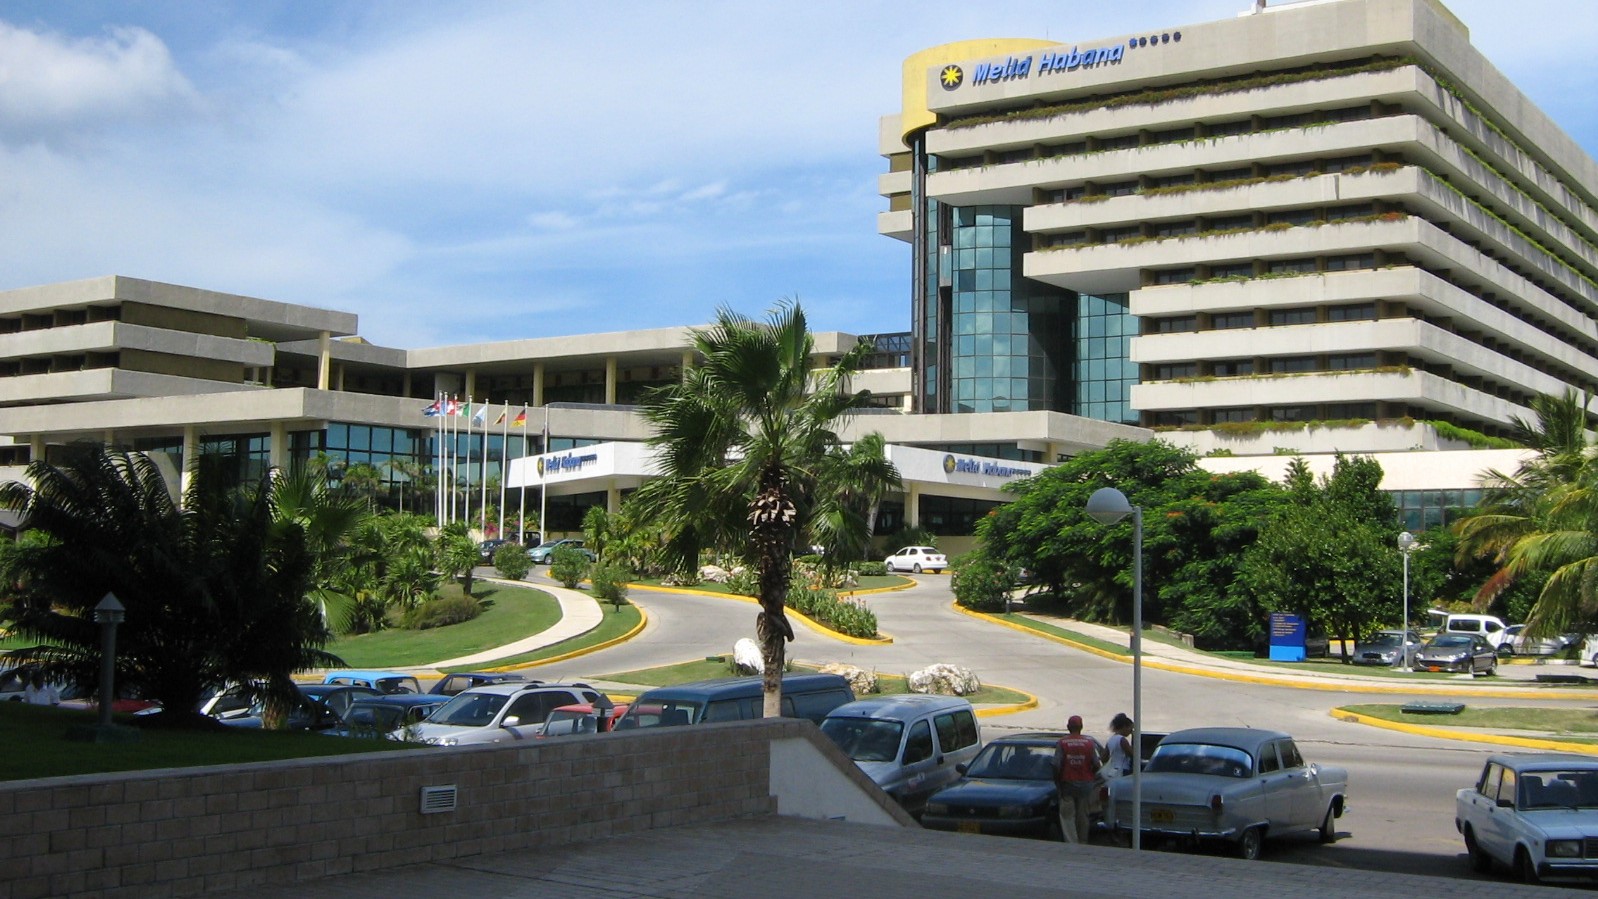 El régimen cubano incrementó las inversiones en la infraestructura hotelera del país